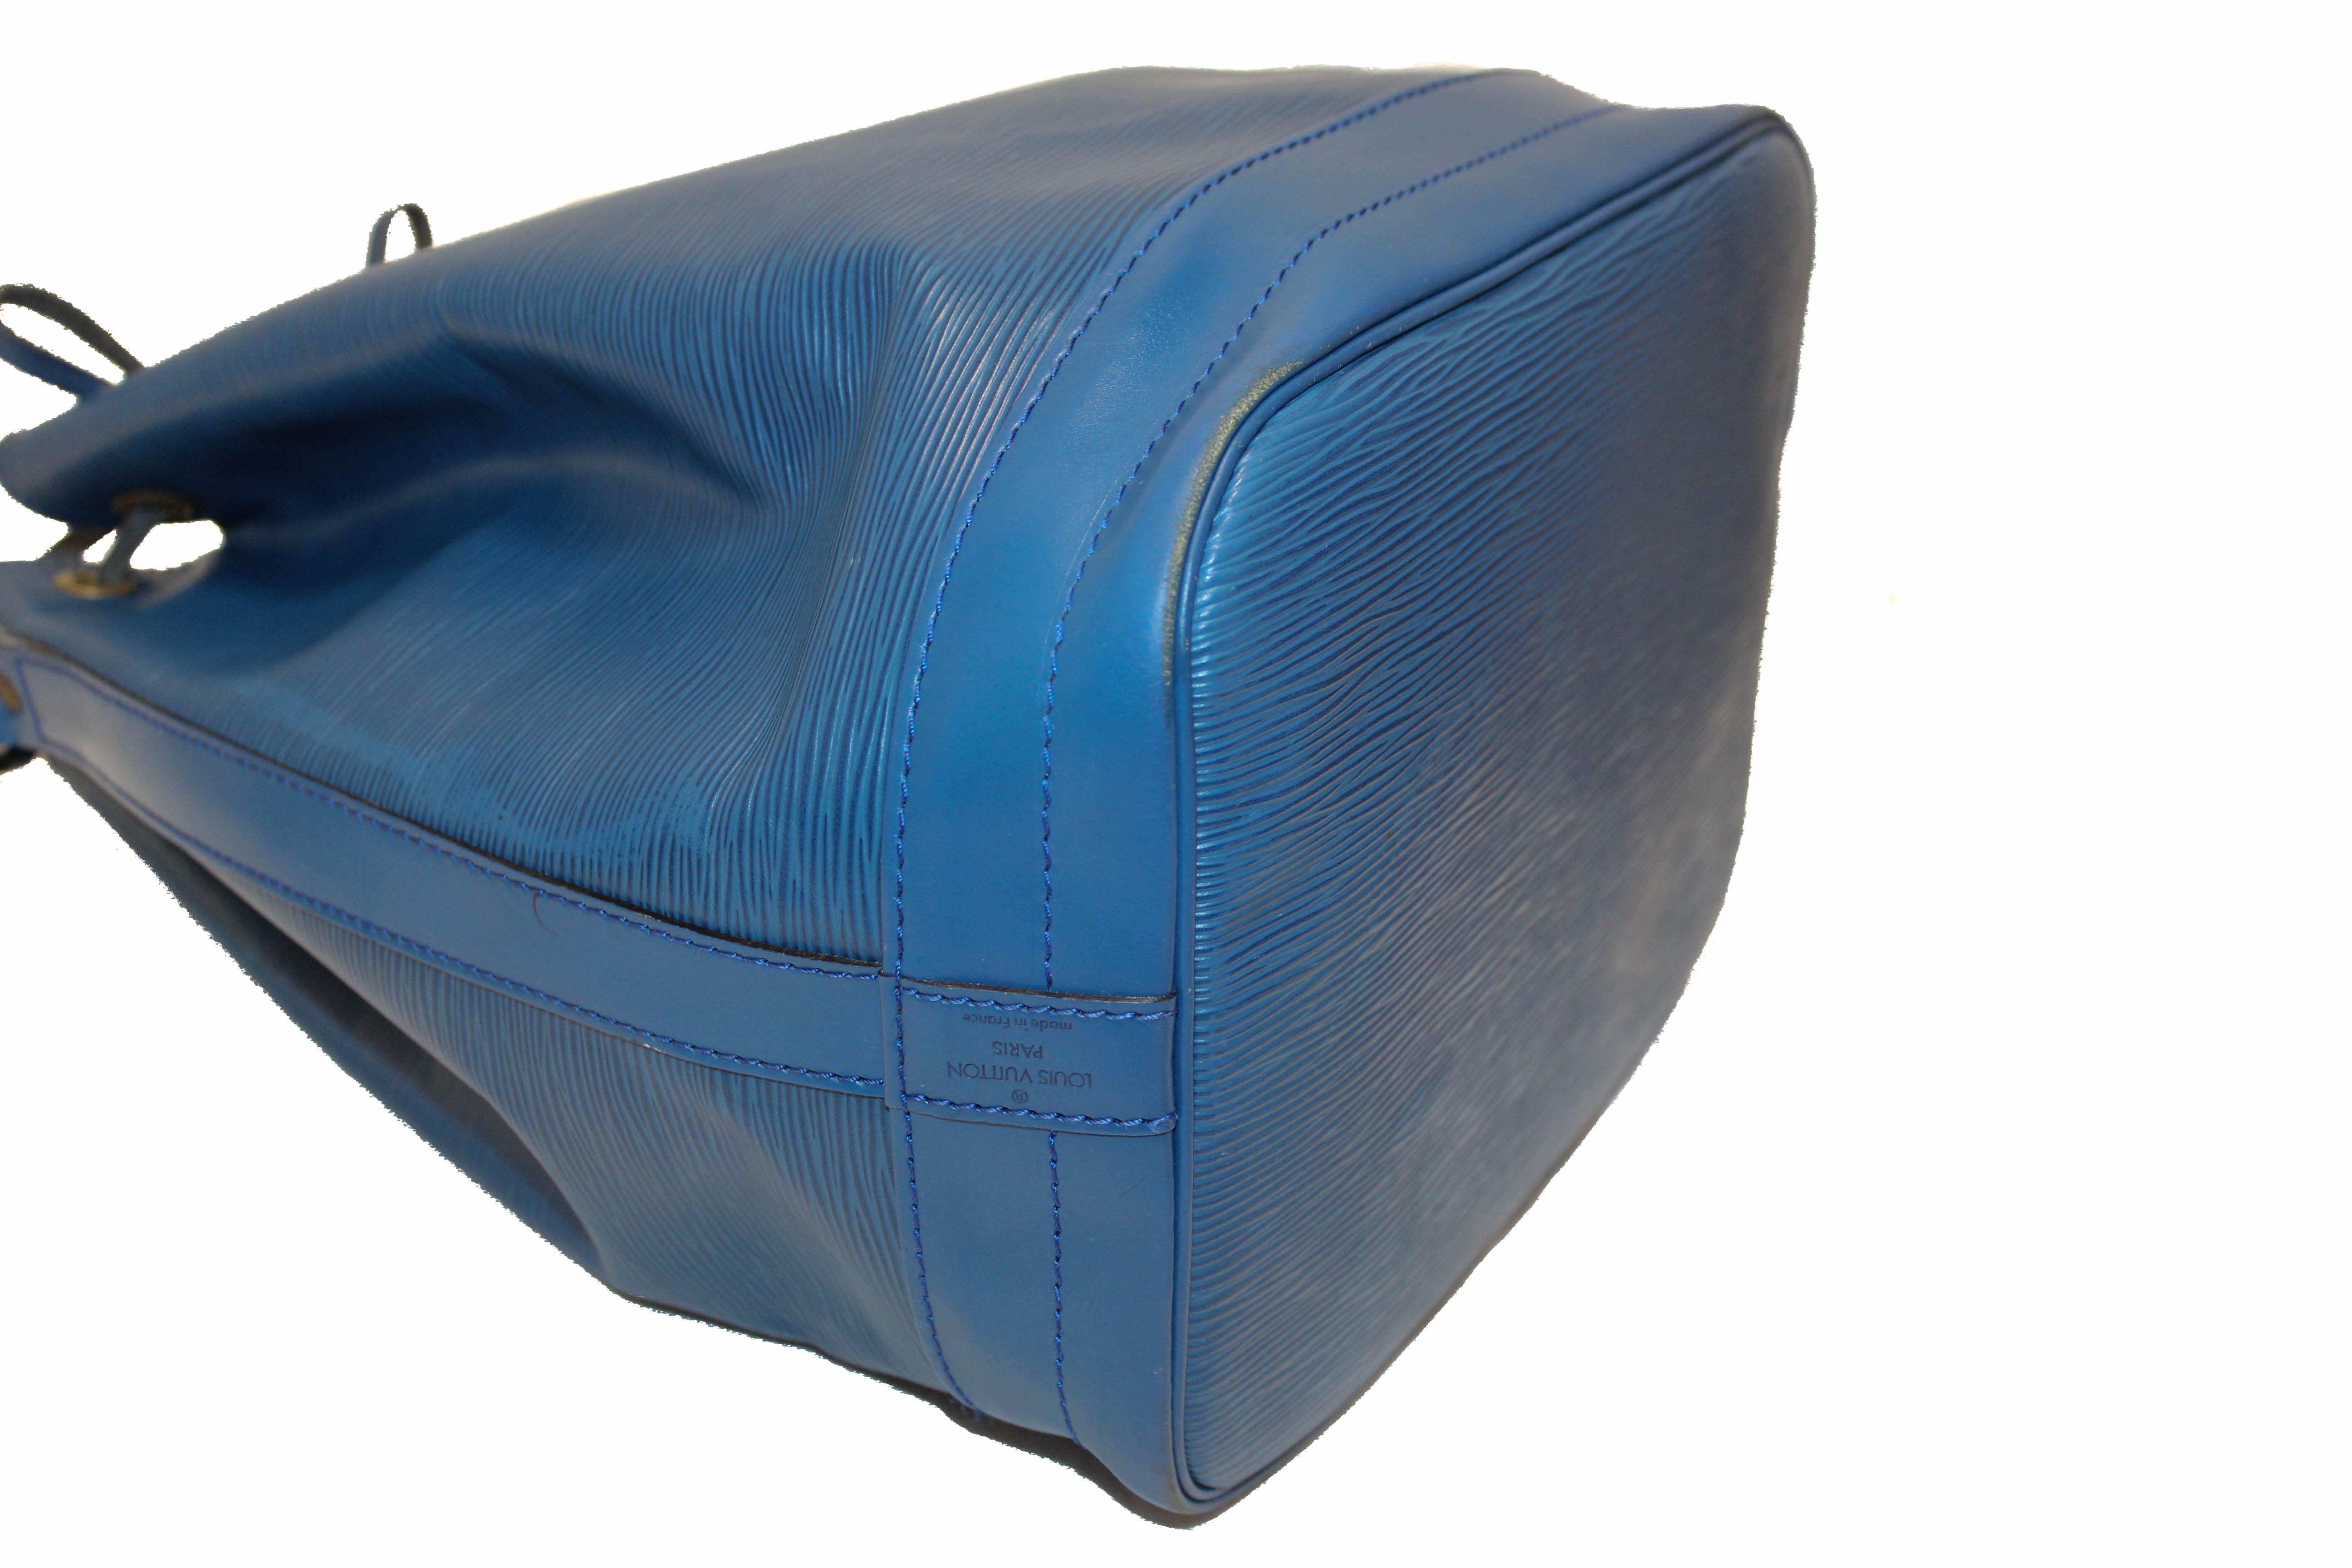 Authentic Louis Vuitton Epi Blue leather Large Noe Shoulder Bag